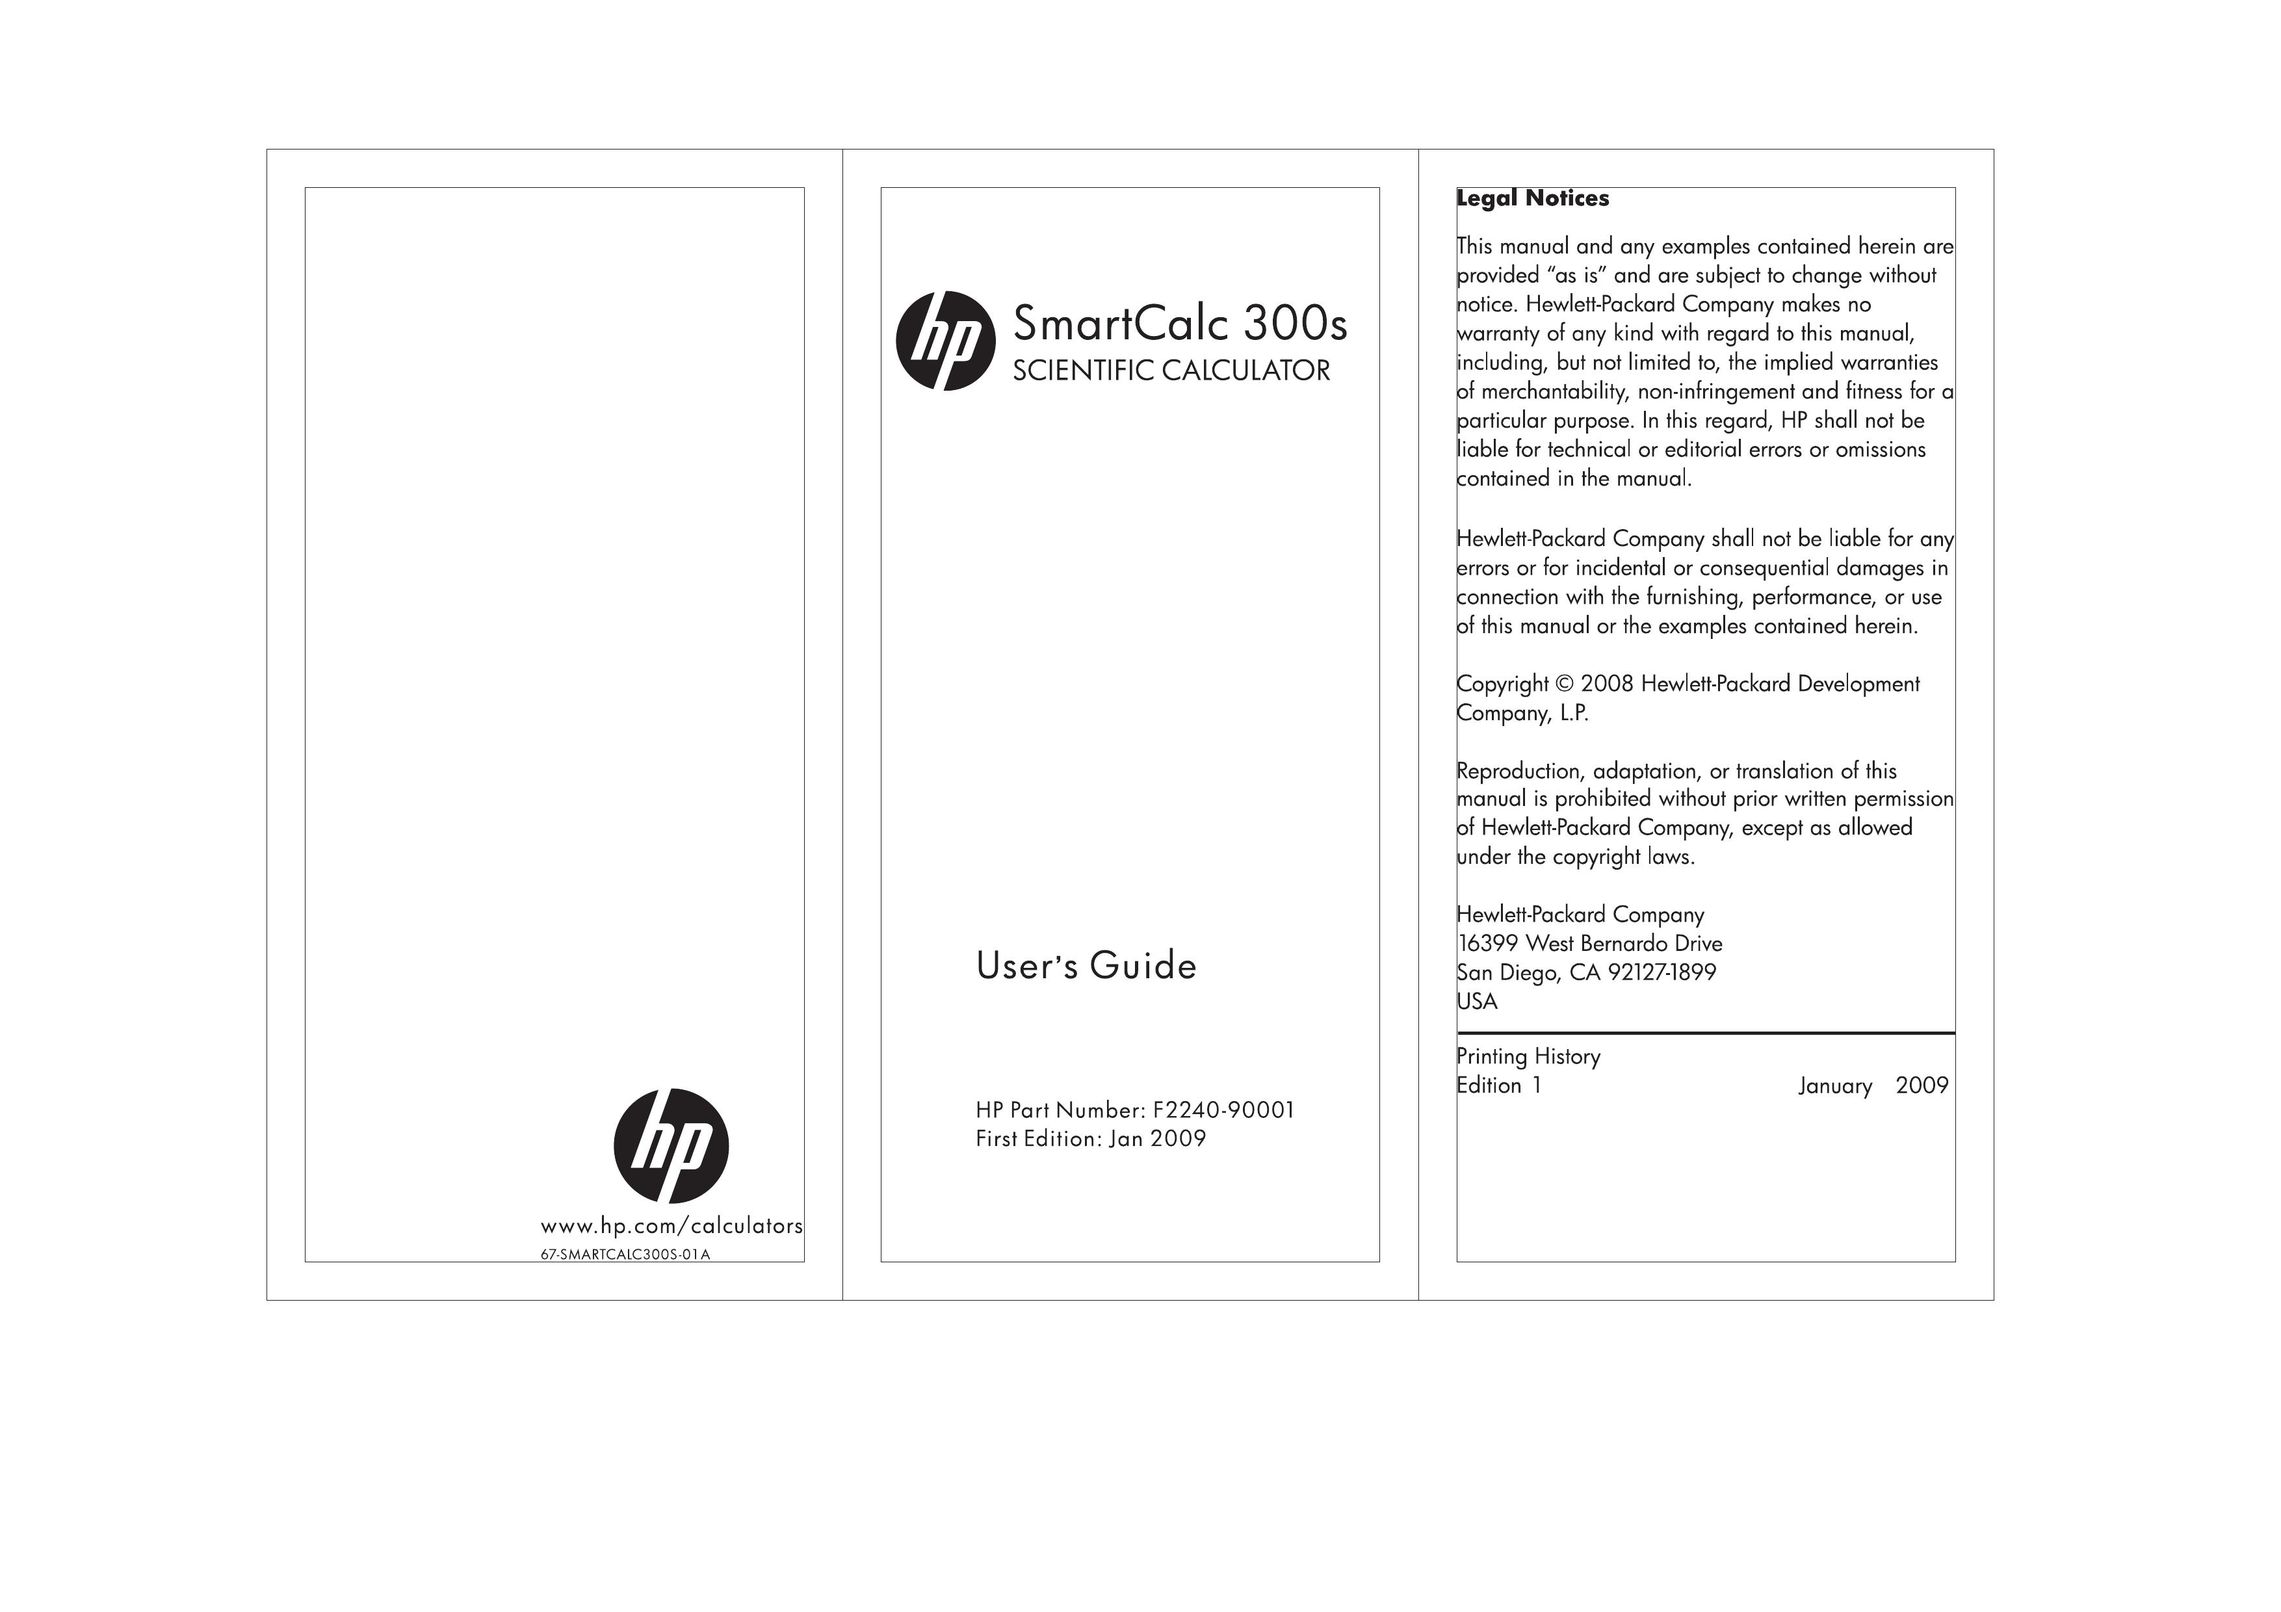 HP (Hewlett-Packard) 300s Calculator User Manual